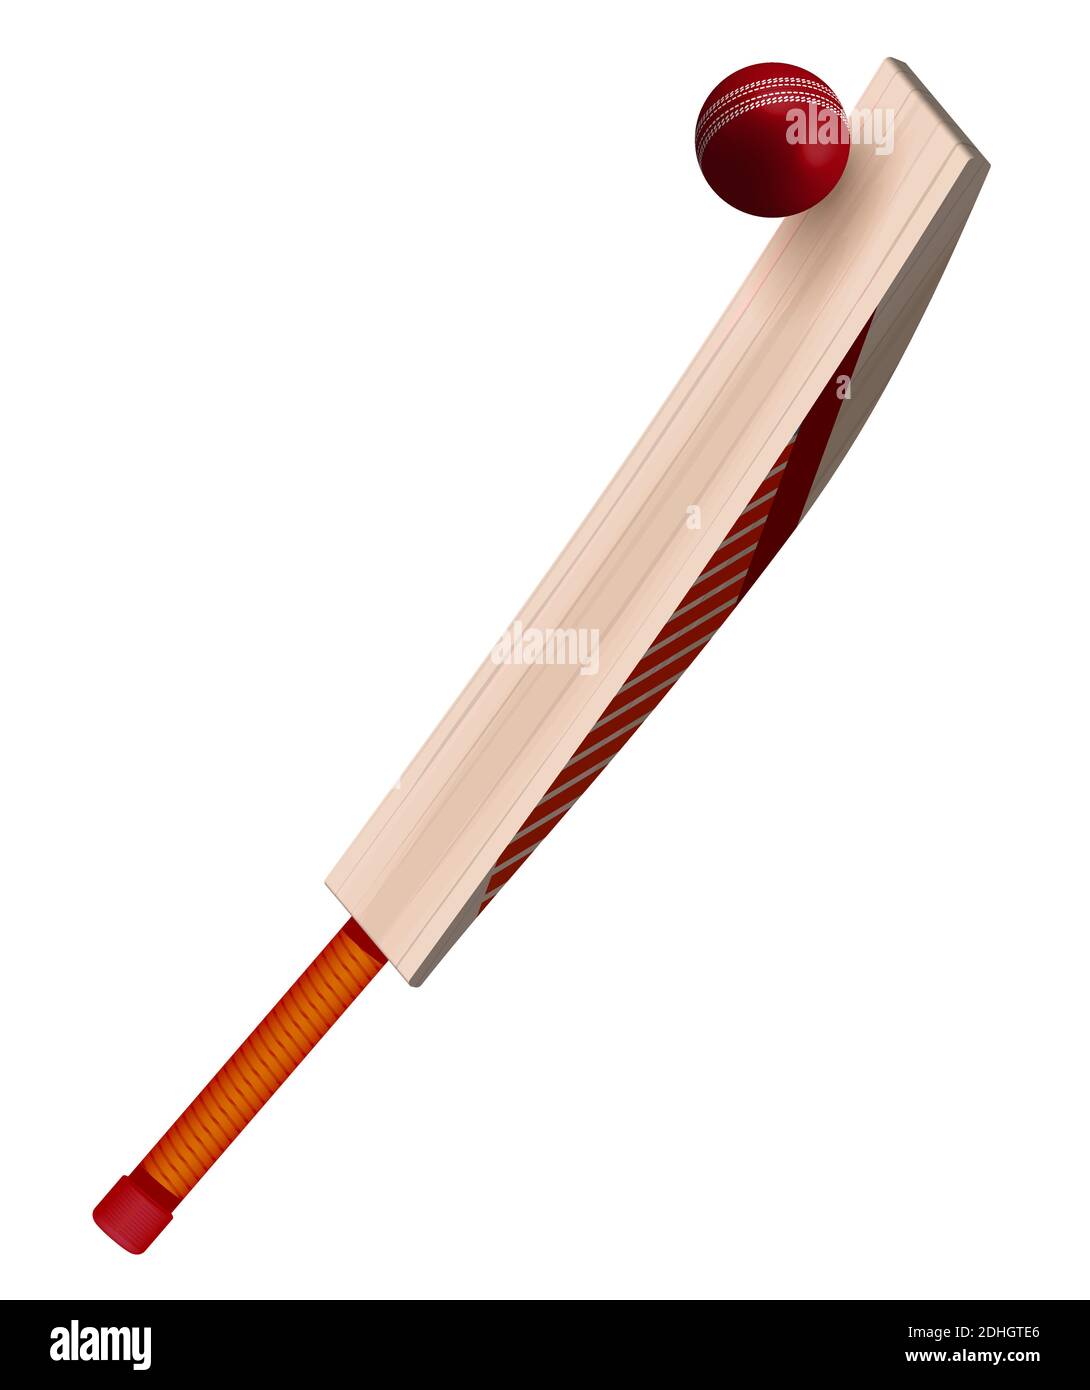 la batte de cricket en bois frappe le ballon en cuir rouge dans un style réaliste sur fond blanc. Sports d'équipe d'été. Vecteur sur fond blanc Illustration de Vecteur